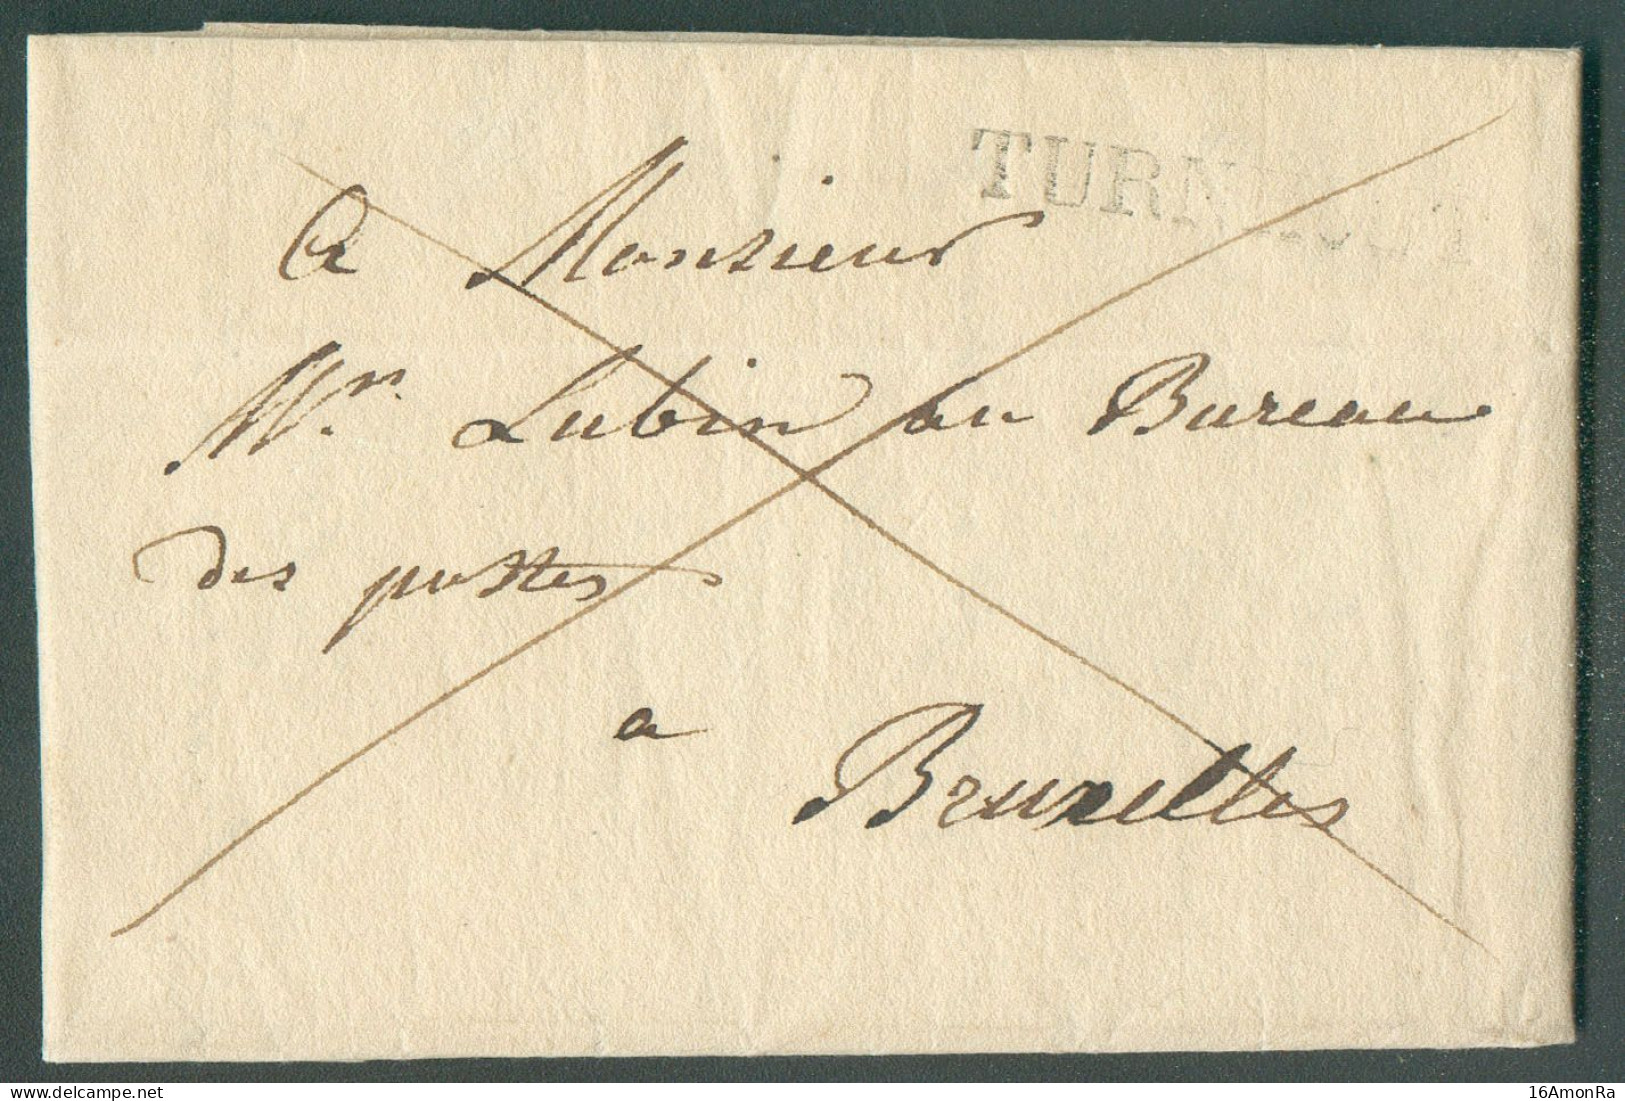 LAC De TURNHOUT le 4 Septembre 1828 Adressée En Franchise De Port à Mr. Lubin, Au Bureau De Postes à Bruxelles.  Belle F - 1815-1830 (Période Hollandaise)